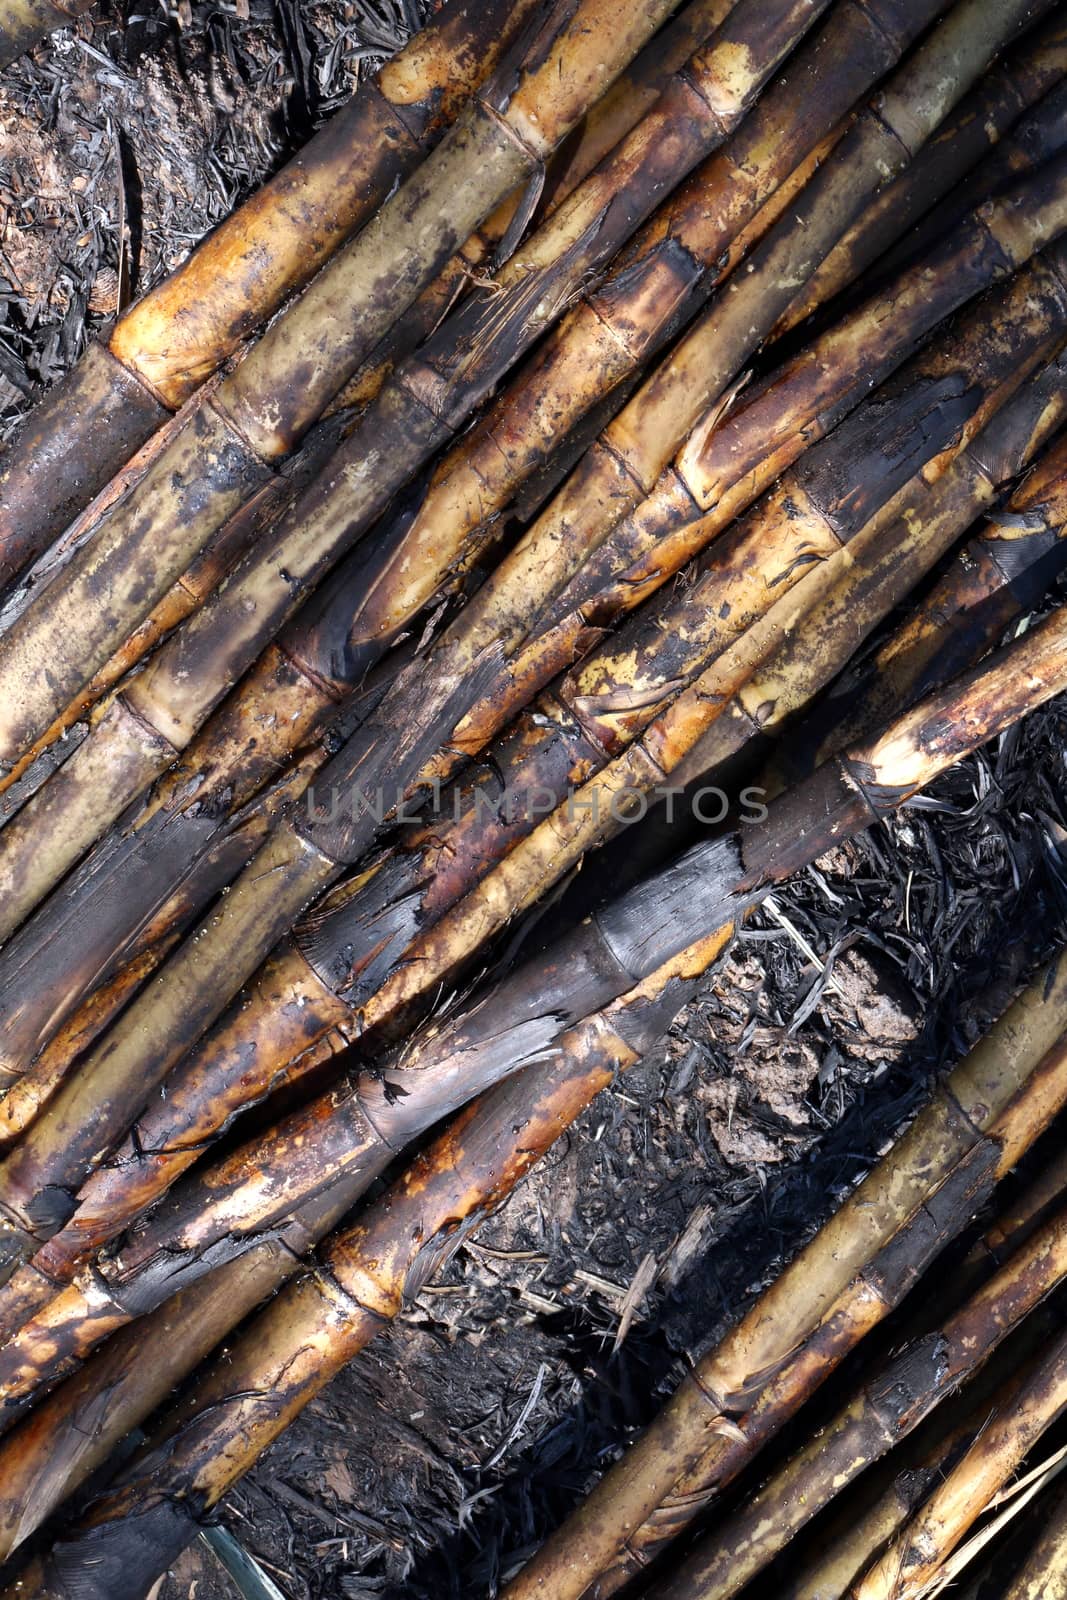 Sugarcane, Sugarcane plantation burn, Sugar cane burned cutting on floor field plantation, Sugarcane background by cgdeaw